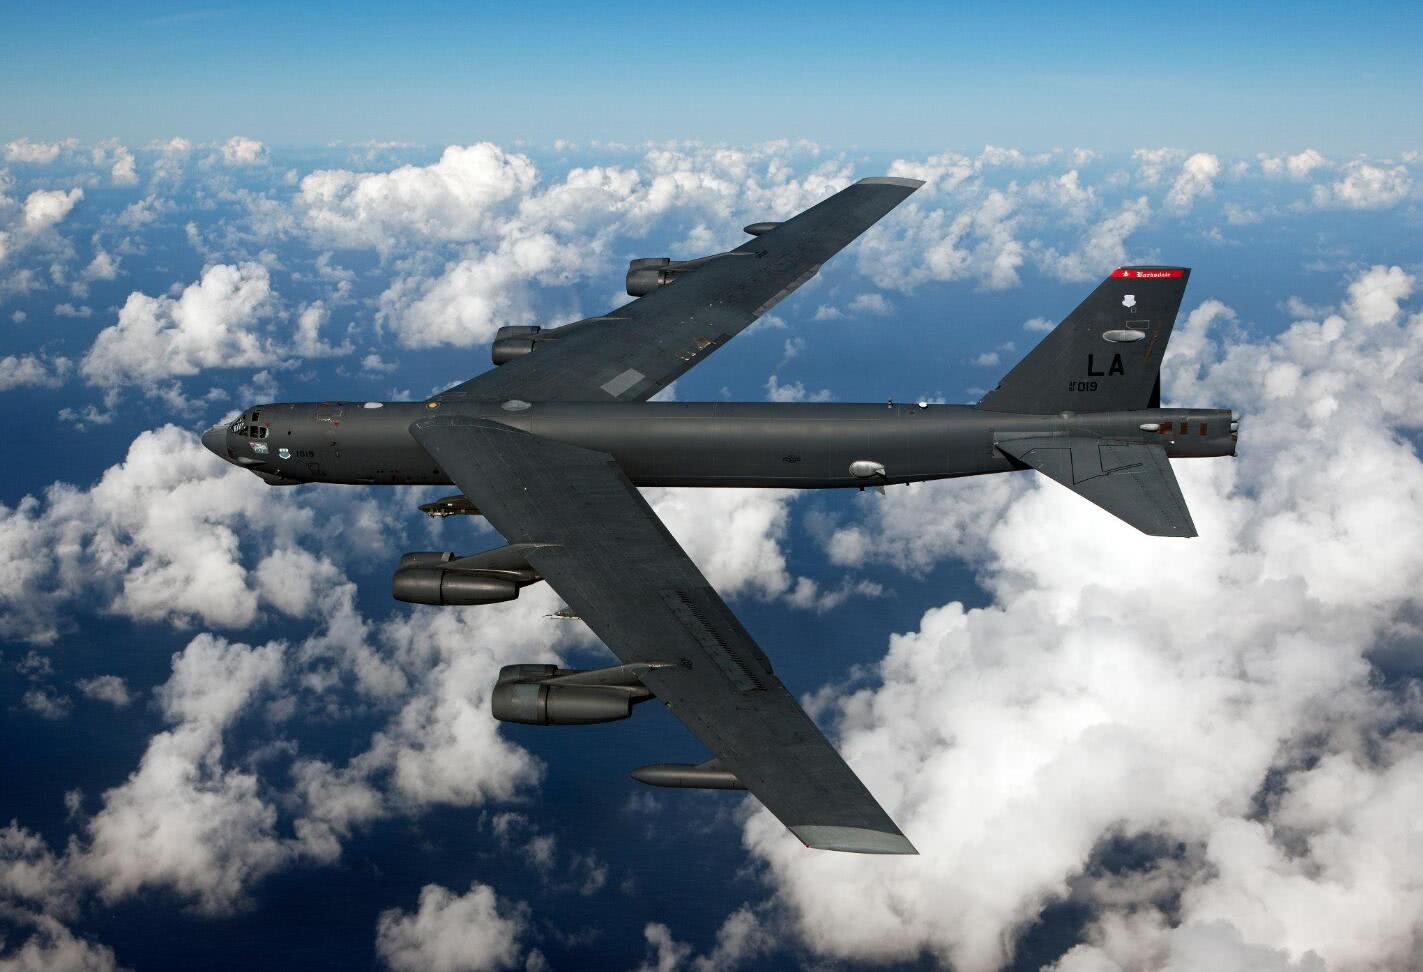 B-52 Flies Over Clouds